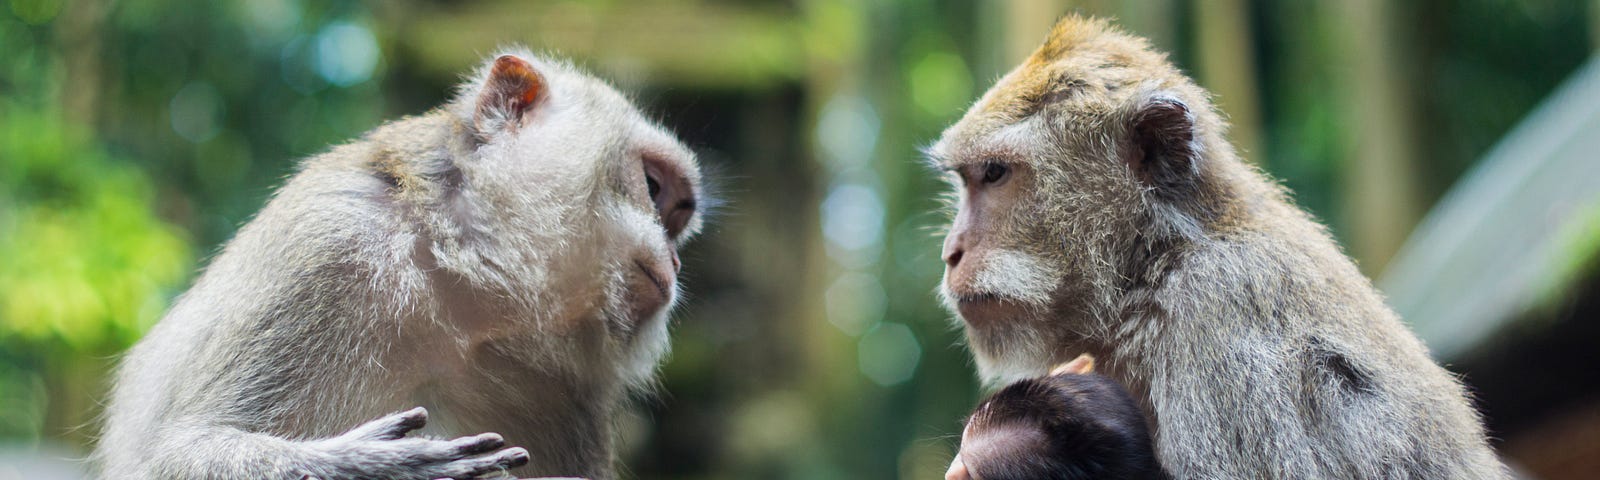 Two Monkeys Talking